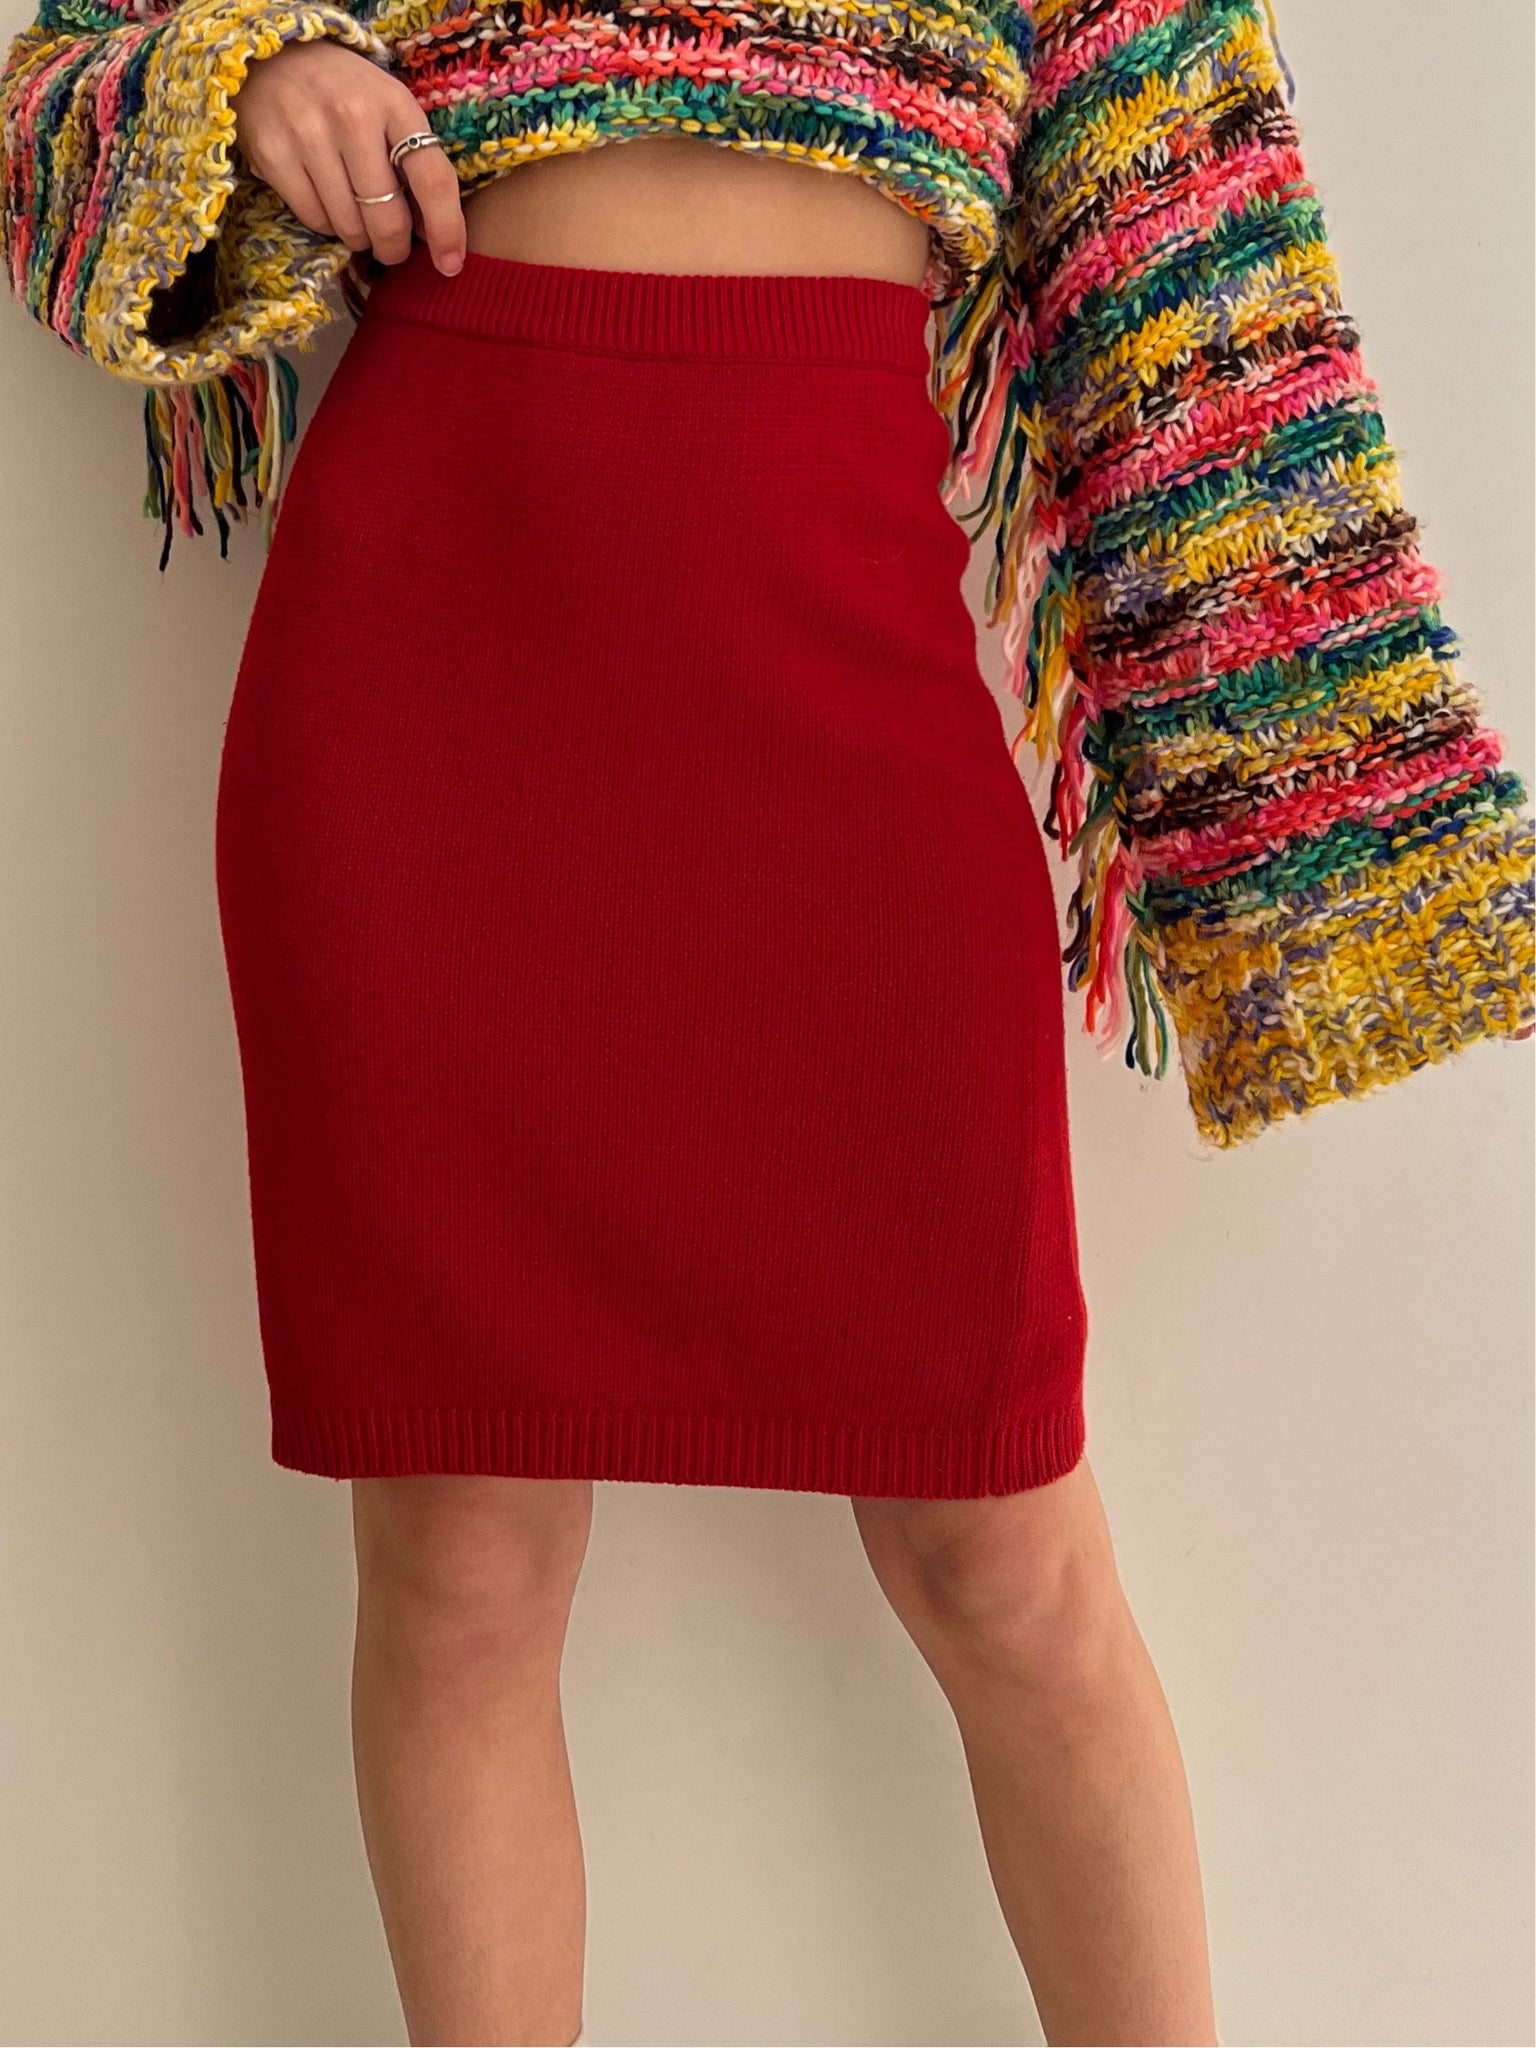 Vintage Red Knit Skirt